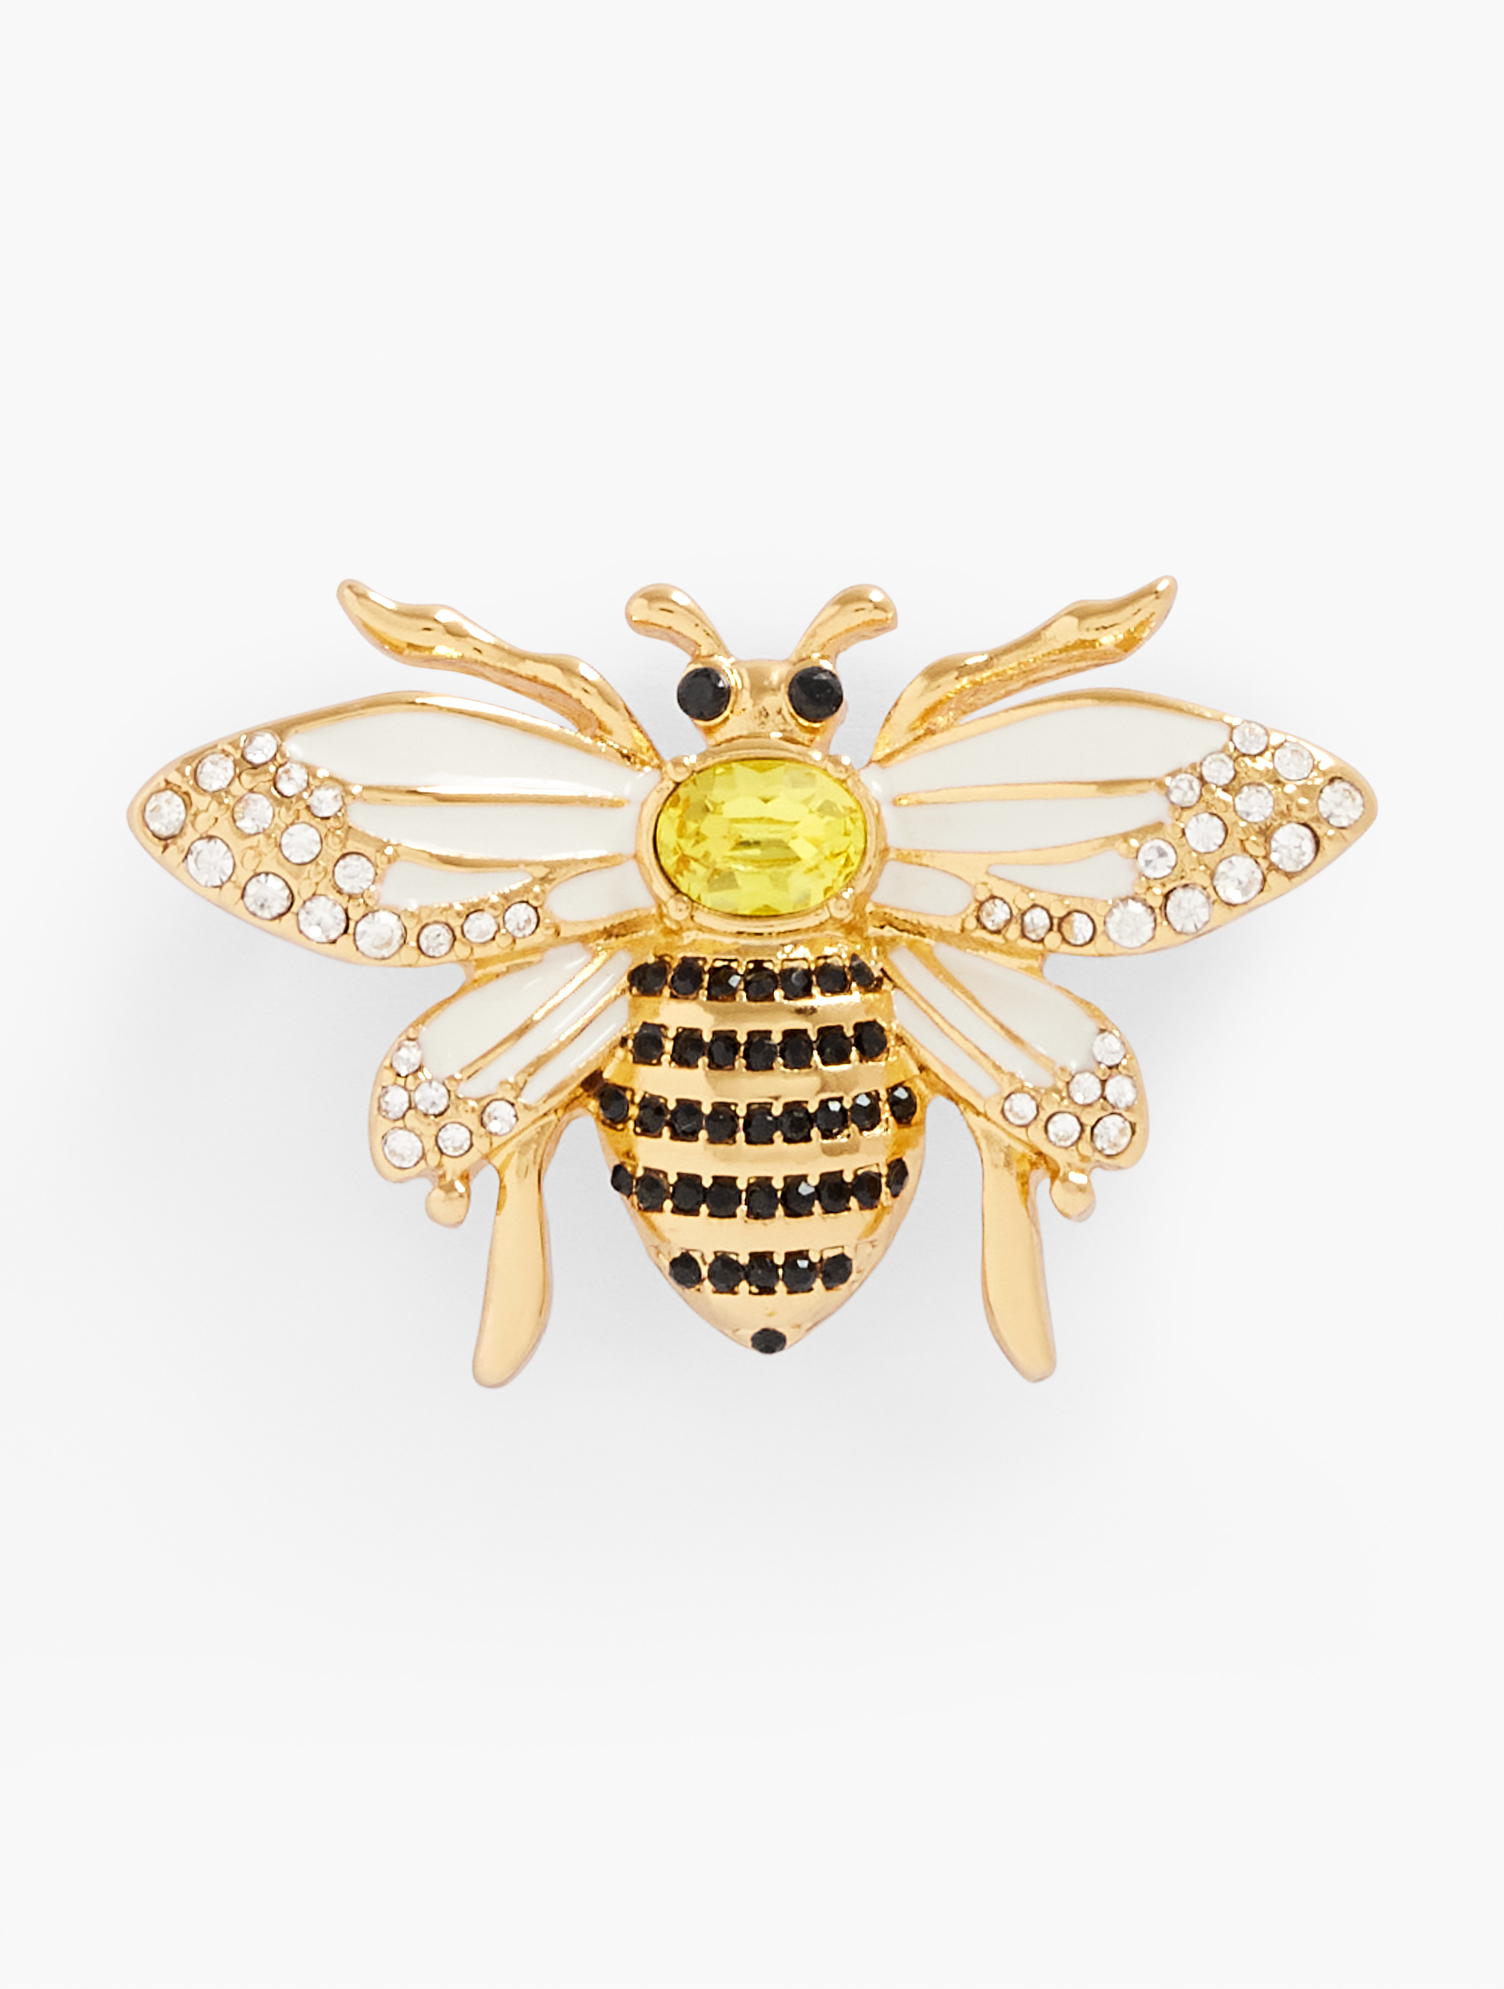 Talbots Honeybee Brooch - Daisy/gold - 001